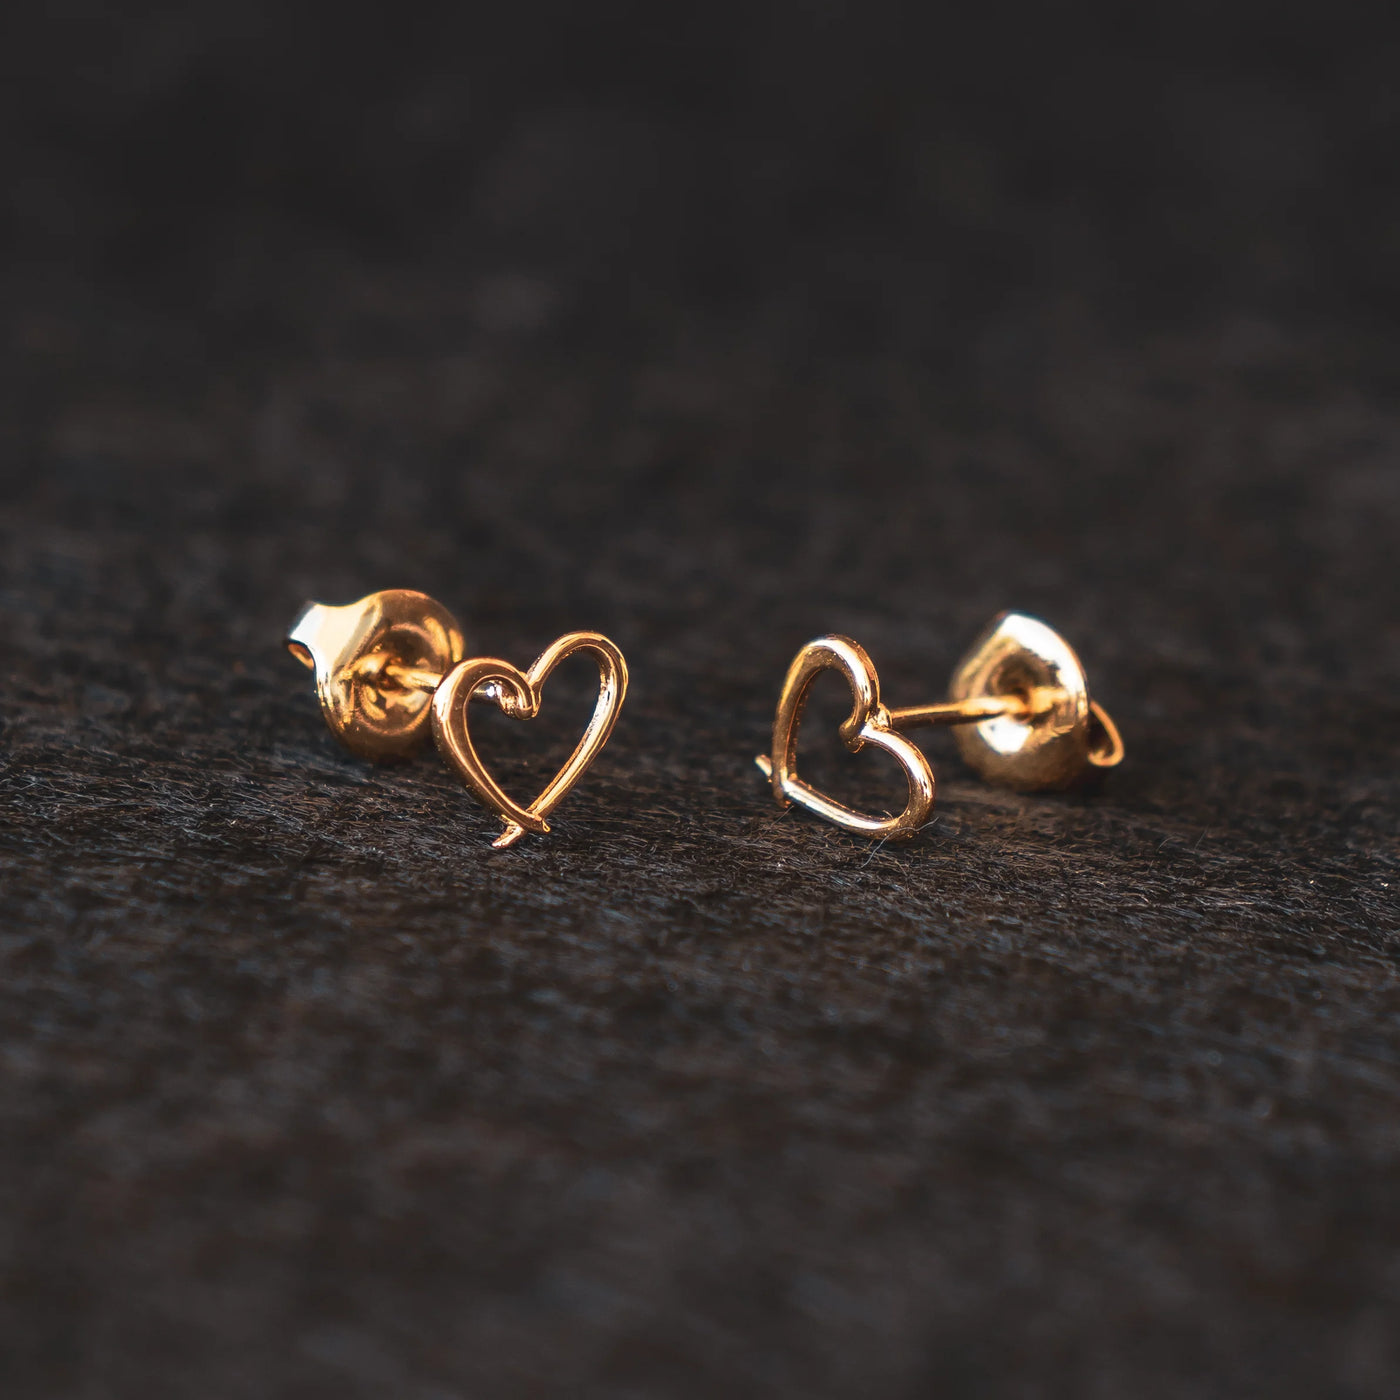 Boucles d'oreilles "Coeur" Orparima de la collection Puces d'oreilles, dorés à l'or fin 24 Carats.